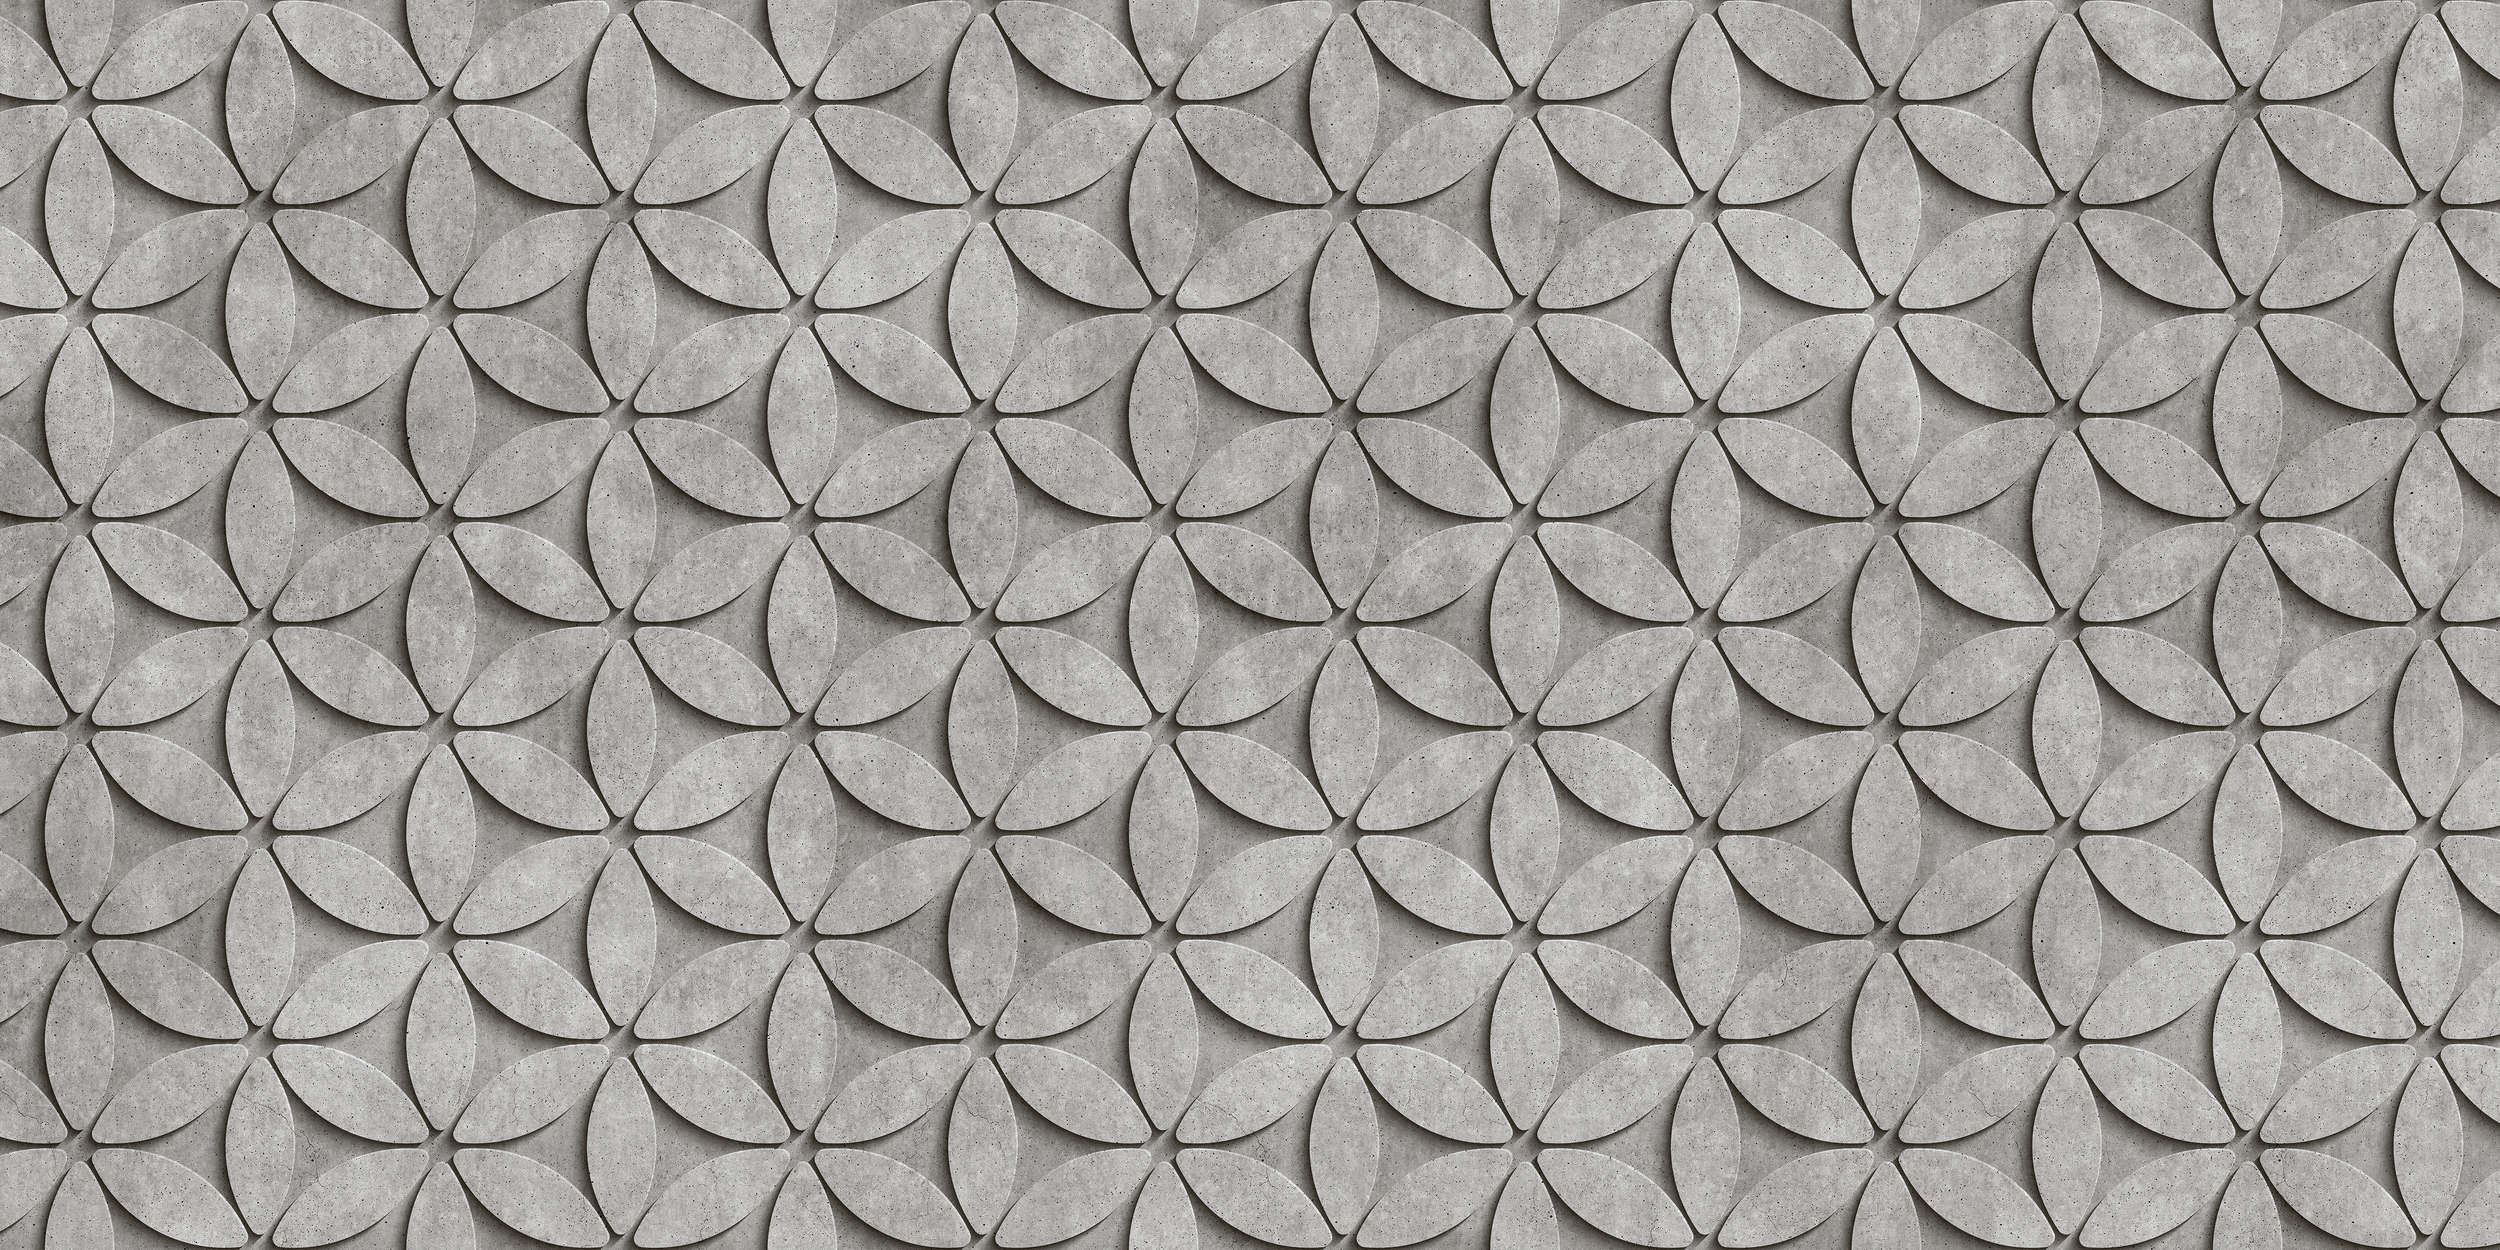             Piastrella 1 - Carta da parati in poligoni di cemento 3D - Grigio, Nero | Premium Smooth Fleece
        